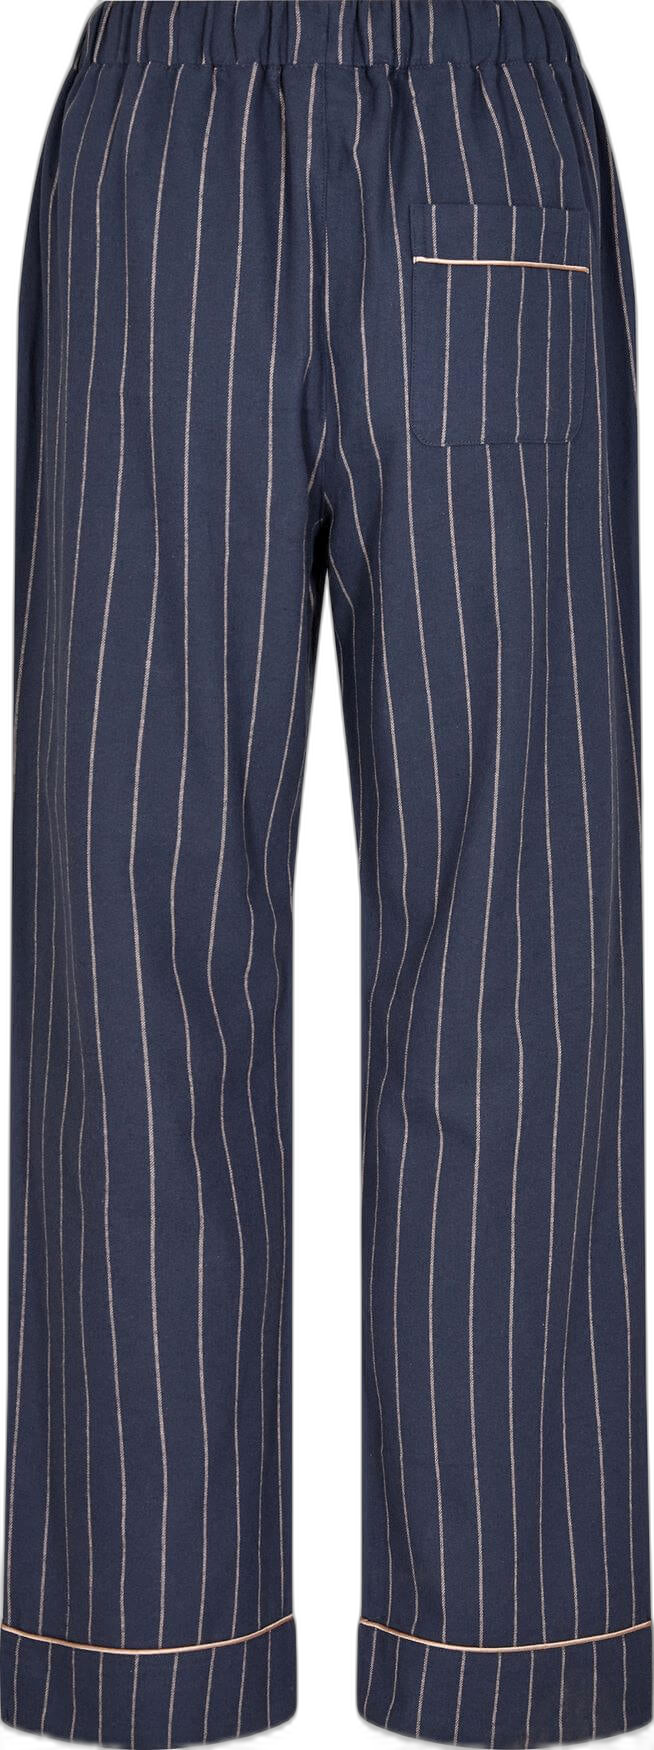 JBS of Denmark - Flannel pants Striped.